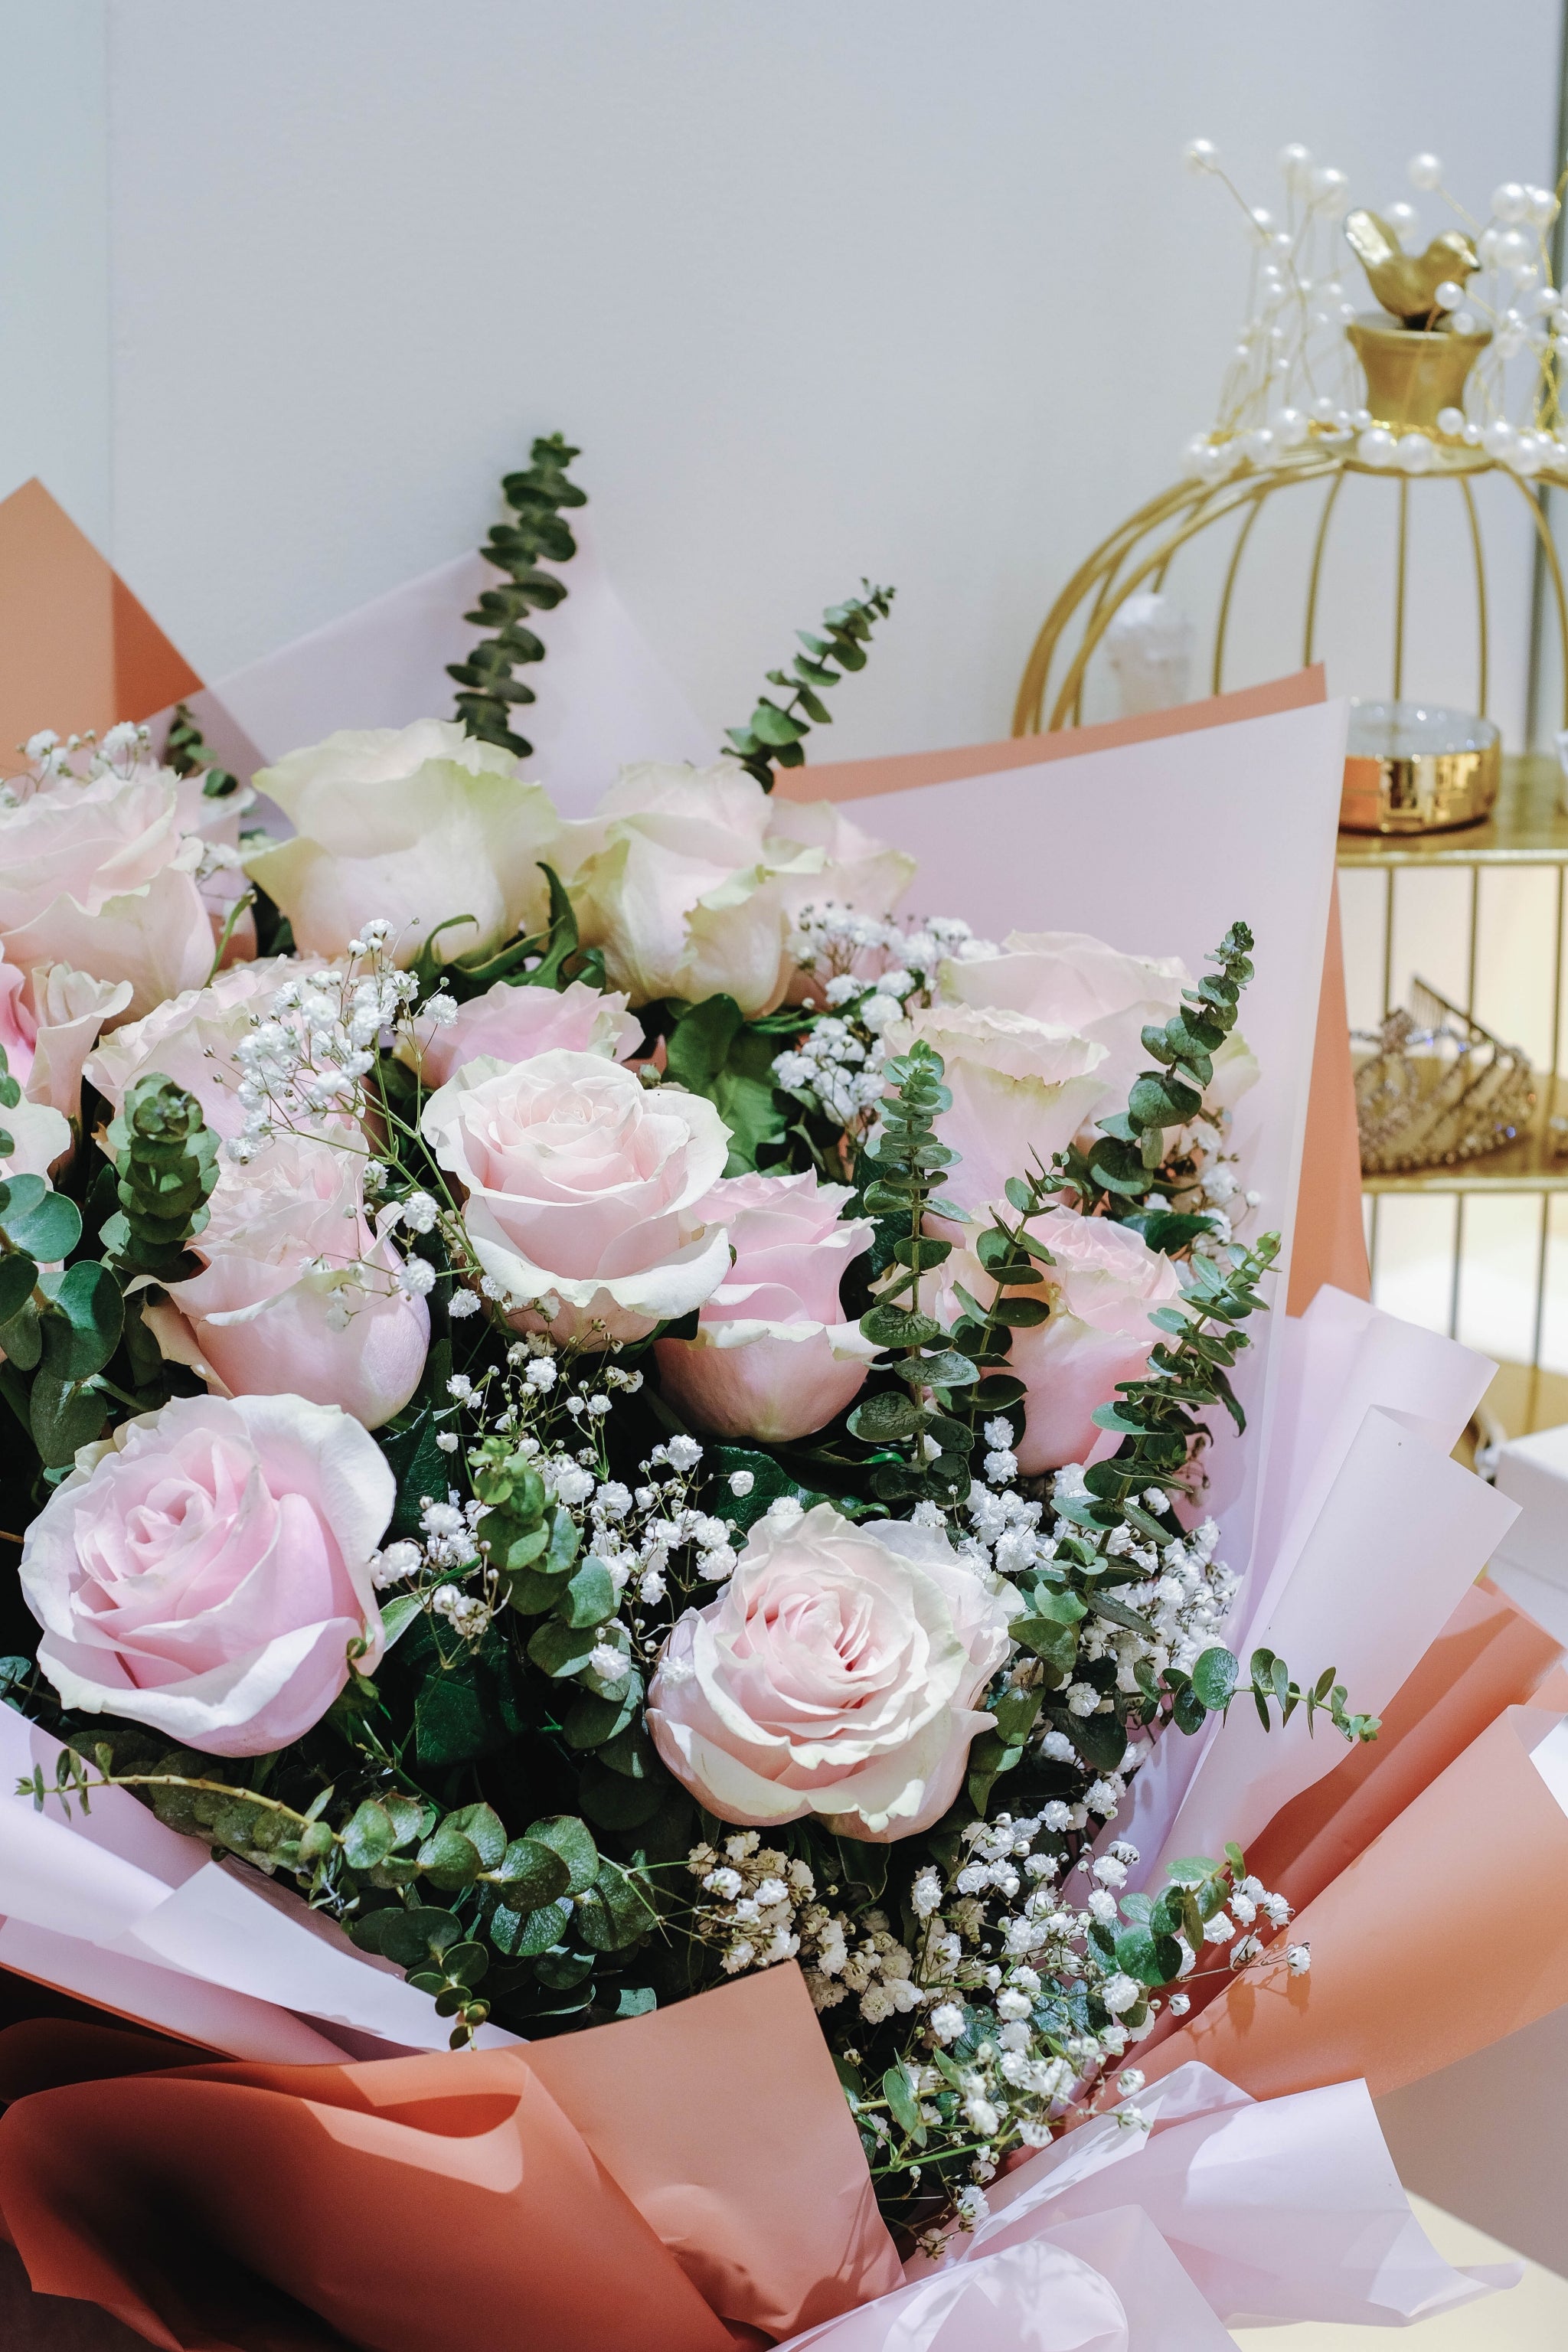 Adoucissant - Doriflor - Fines roses - Market By ToutDuNet